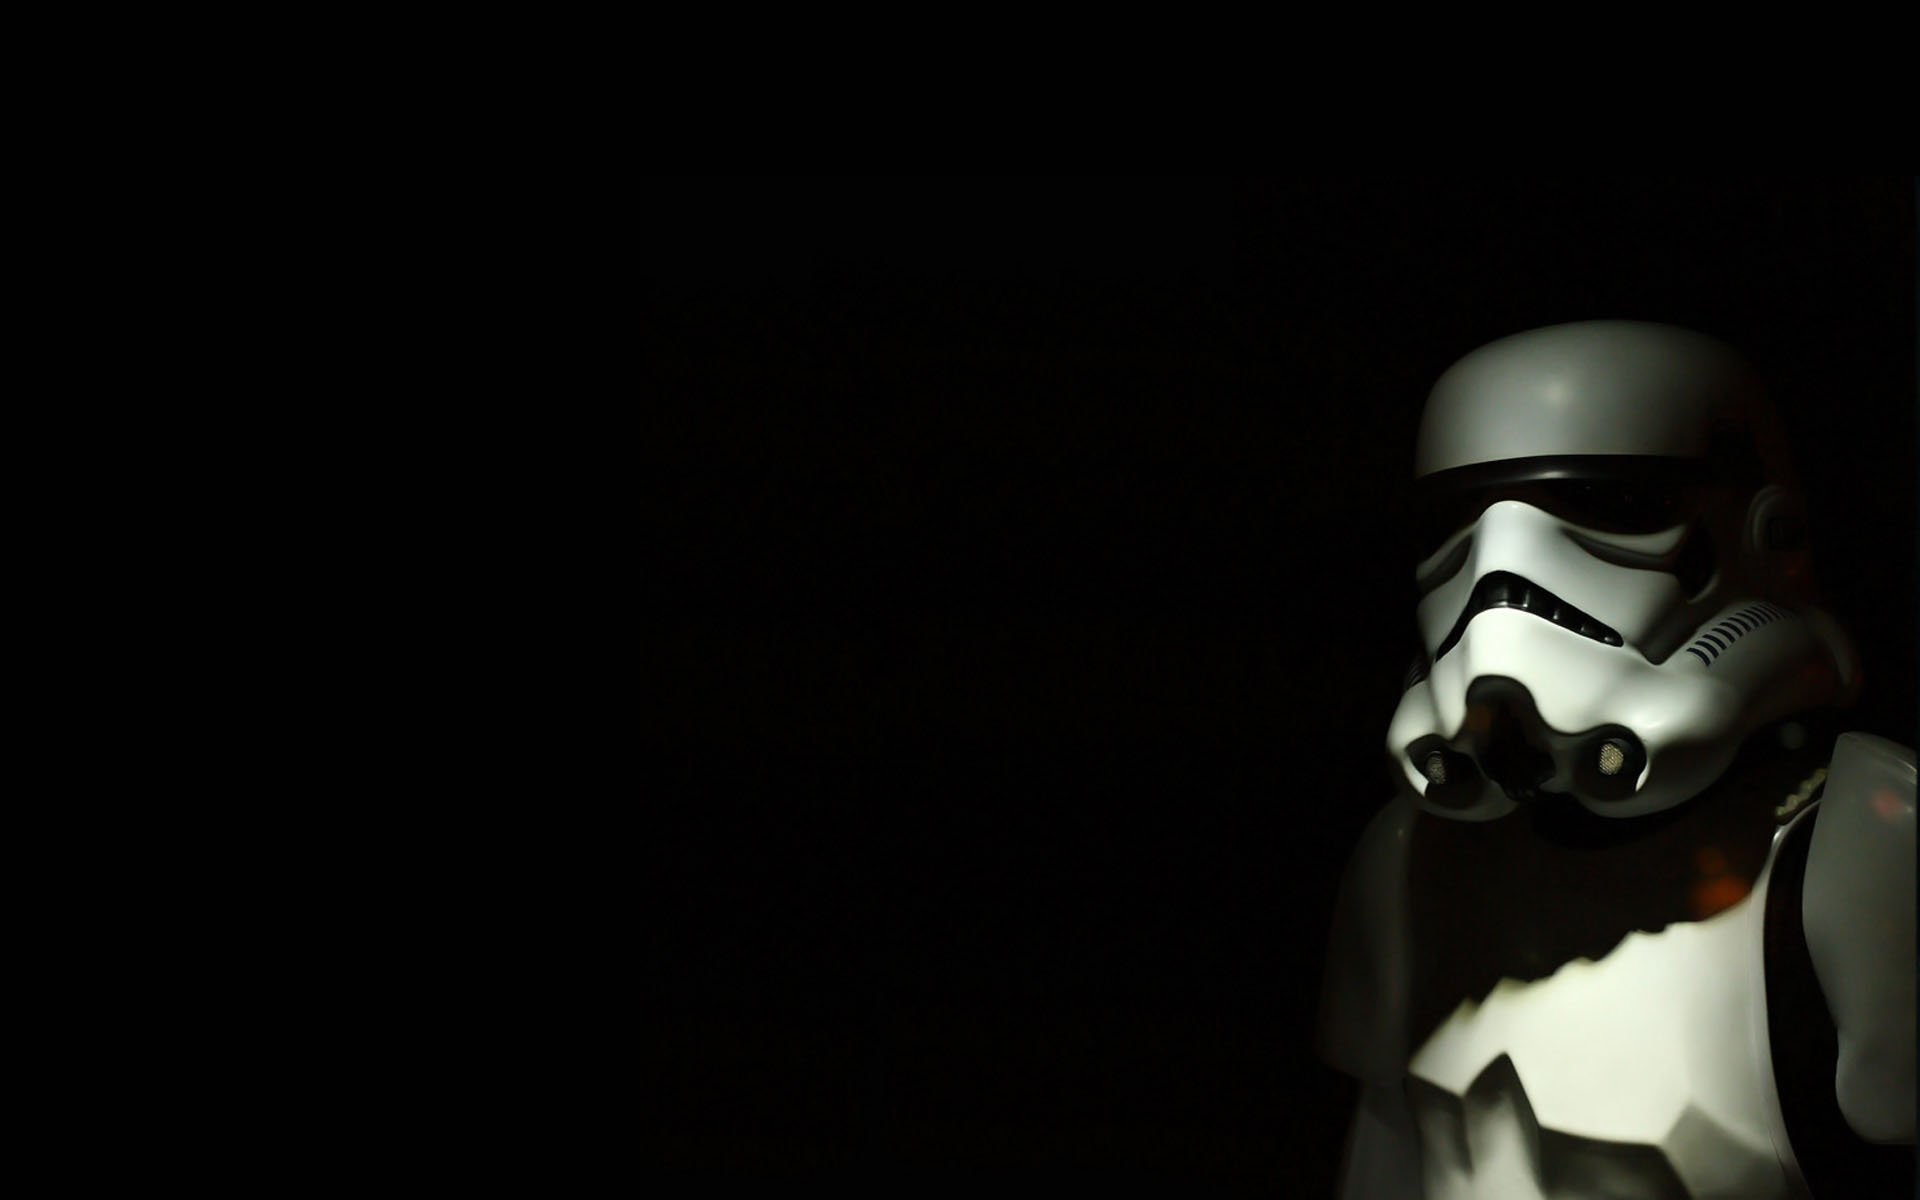 Star Wars black stormtroopers simple background black background wallpaper  | | 234414 | WallpaperUP